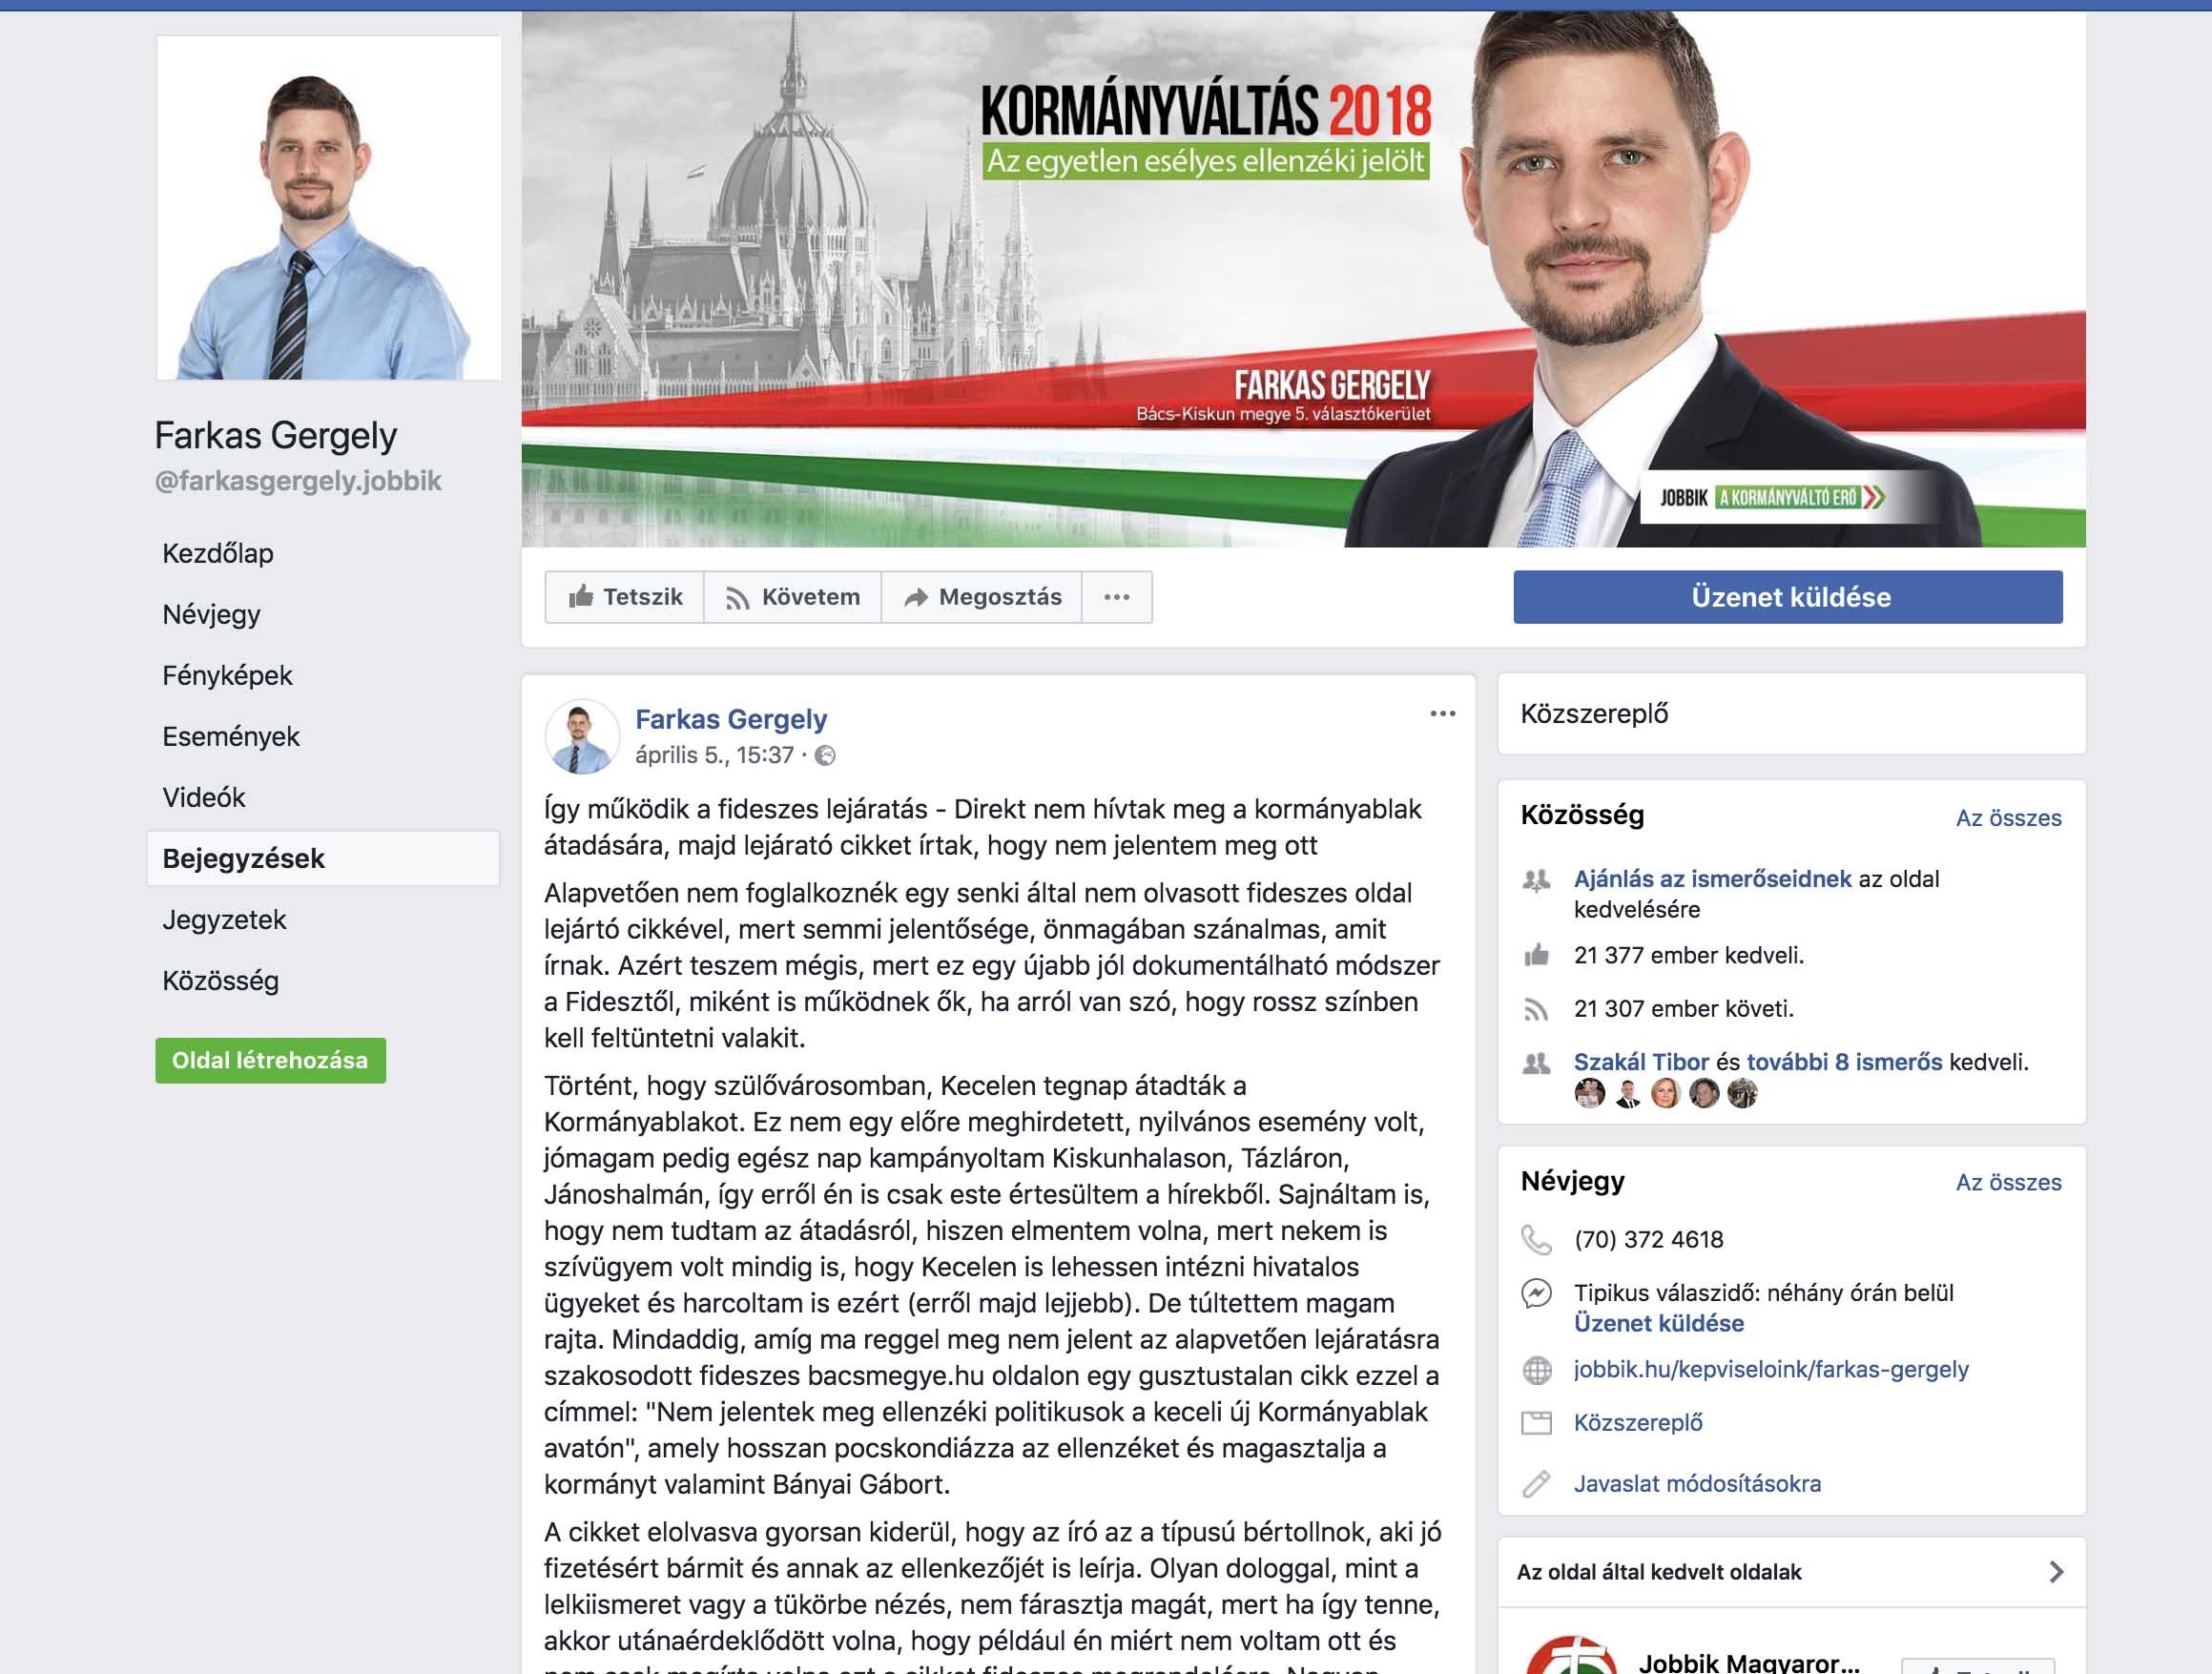 A keceli Jobbikos letörölte a Bányai Gábort sértegető nyilatkozatát a Facebookon